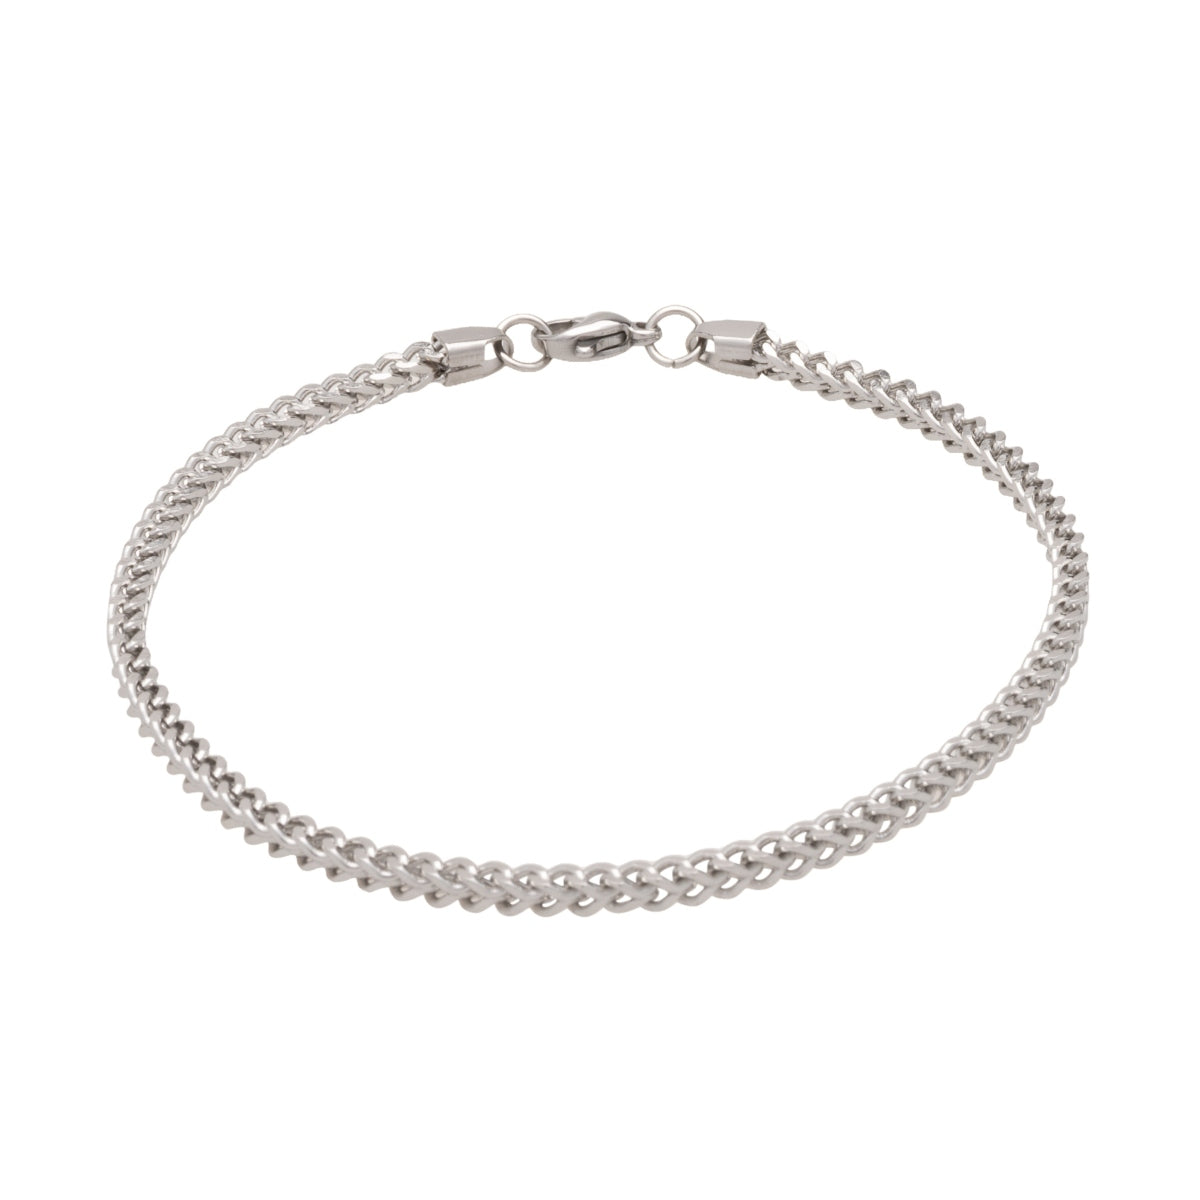 Silver Franco Chain Bracelet